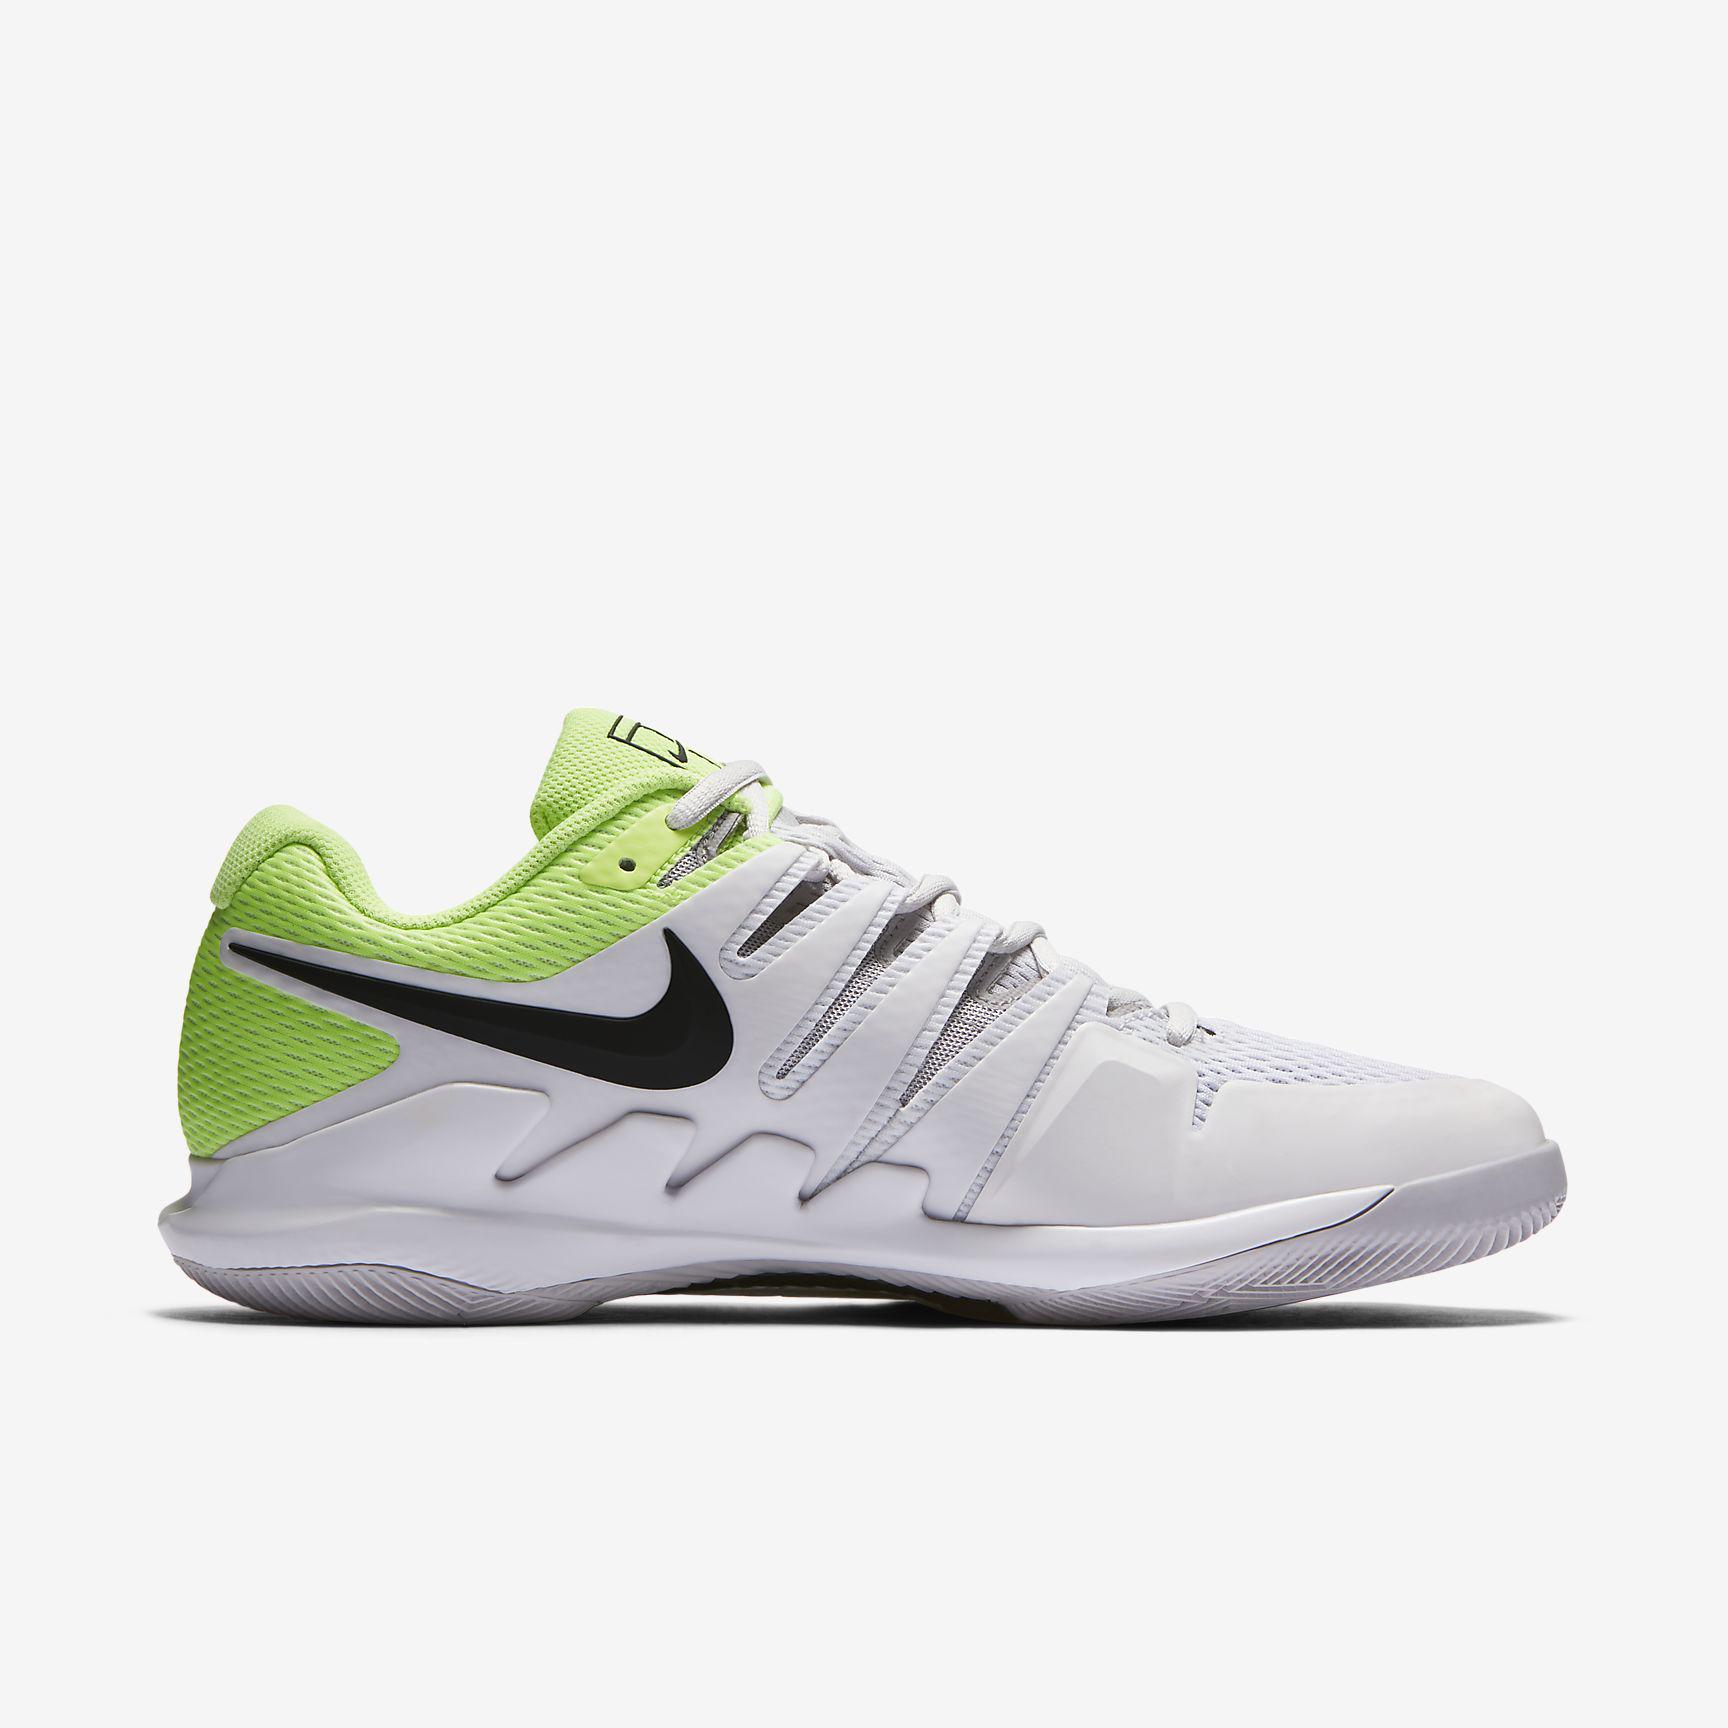 Nike Mens Air Zoom Vapor X Tennis Shoes - Grey/Volt Glow - Tennisnuts.com